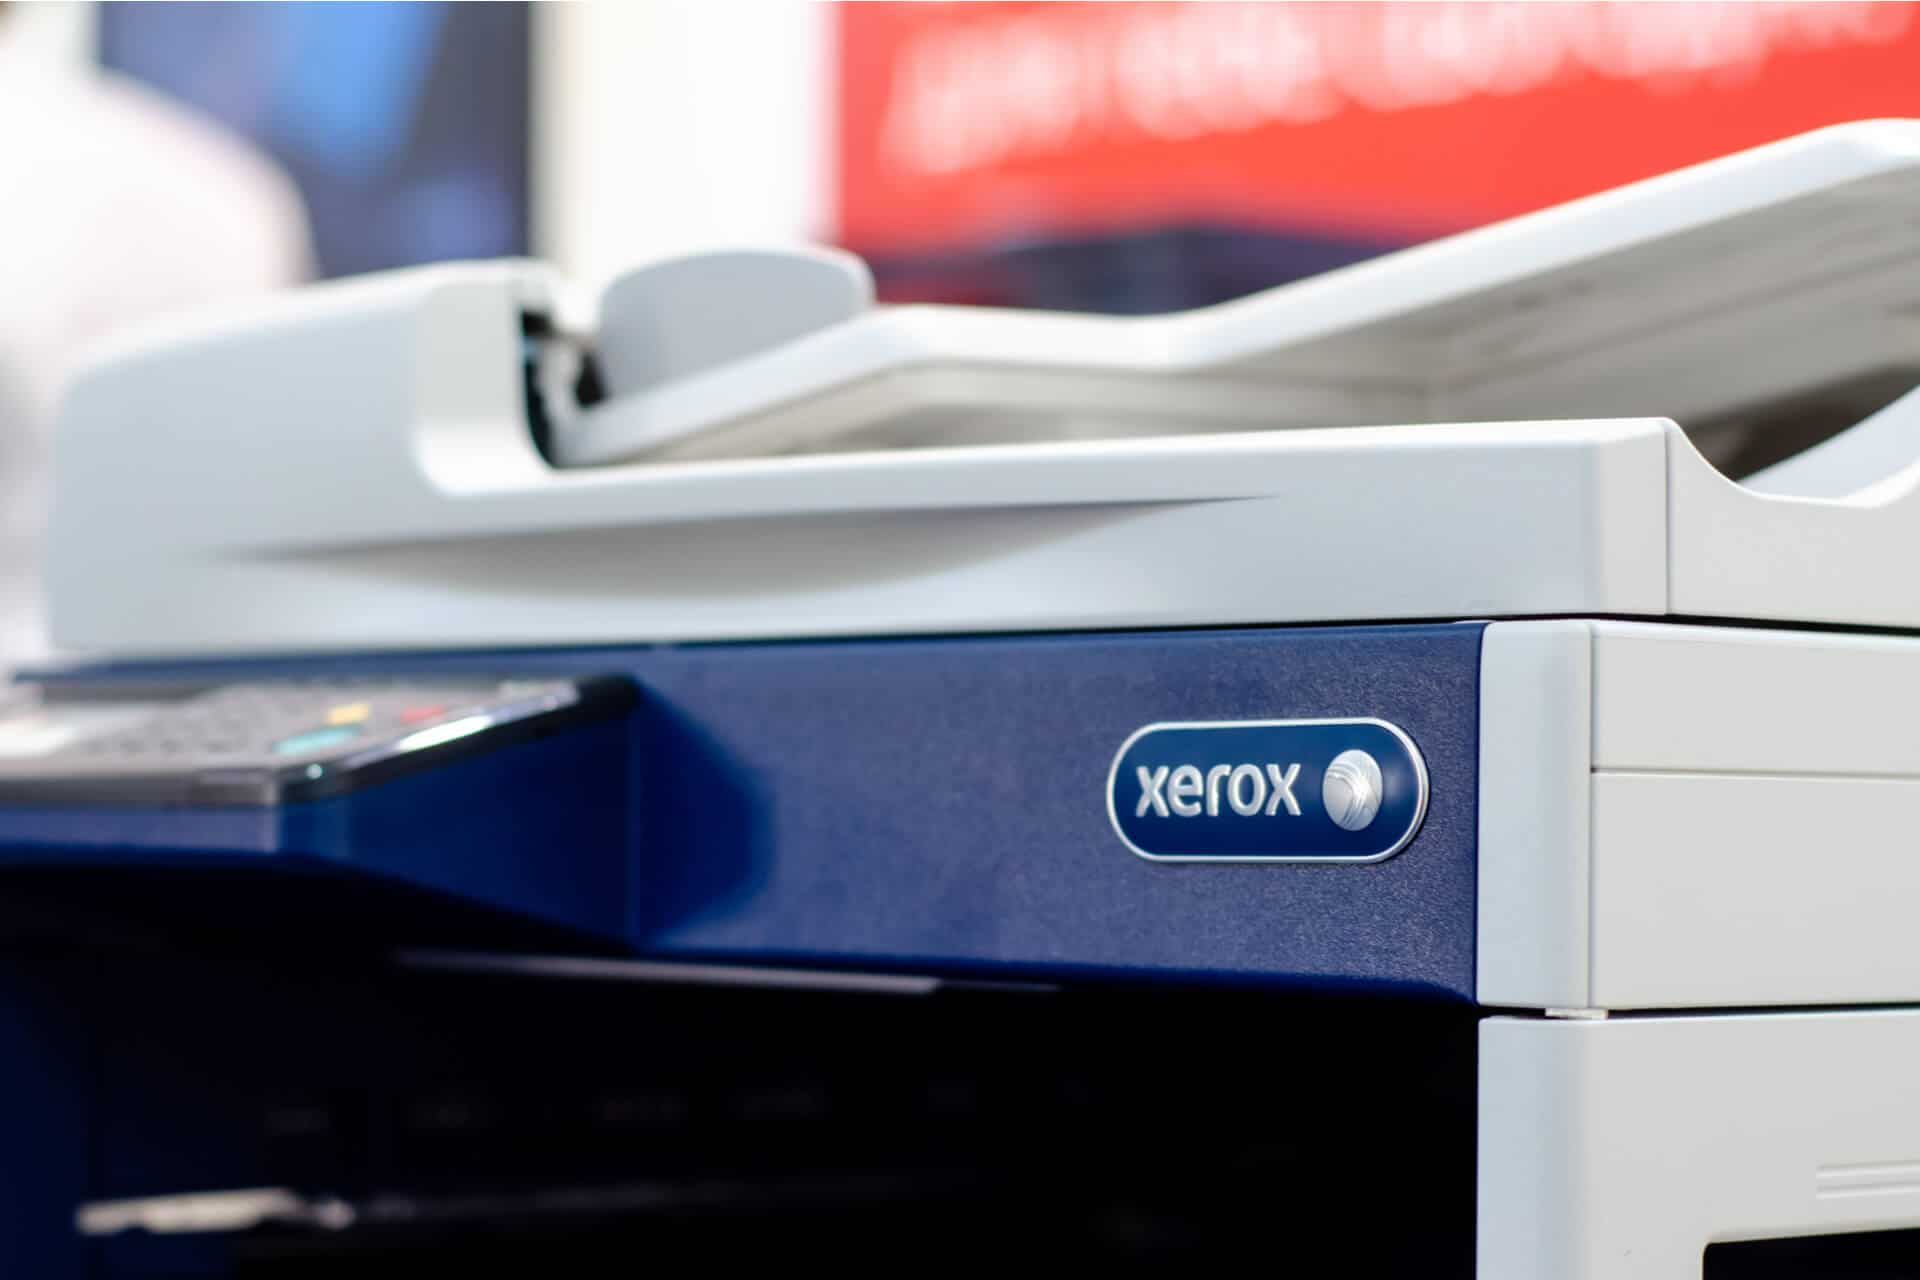 Stampanti Xerox opinioni utili per una scelta sicura bd68fe27